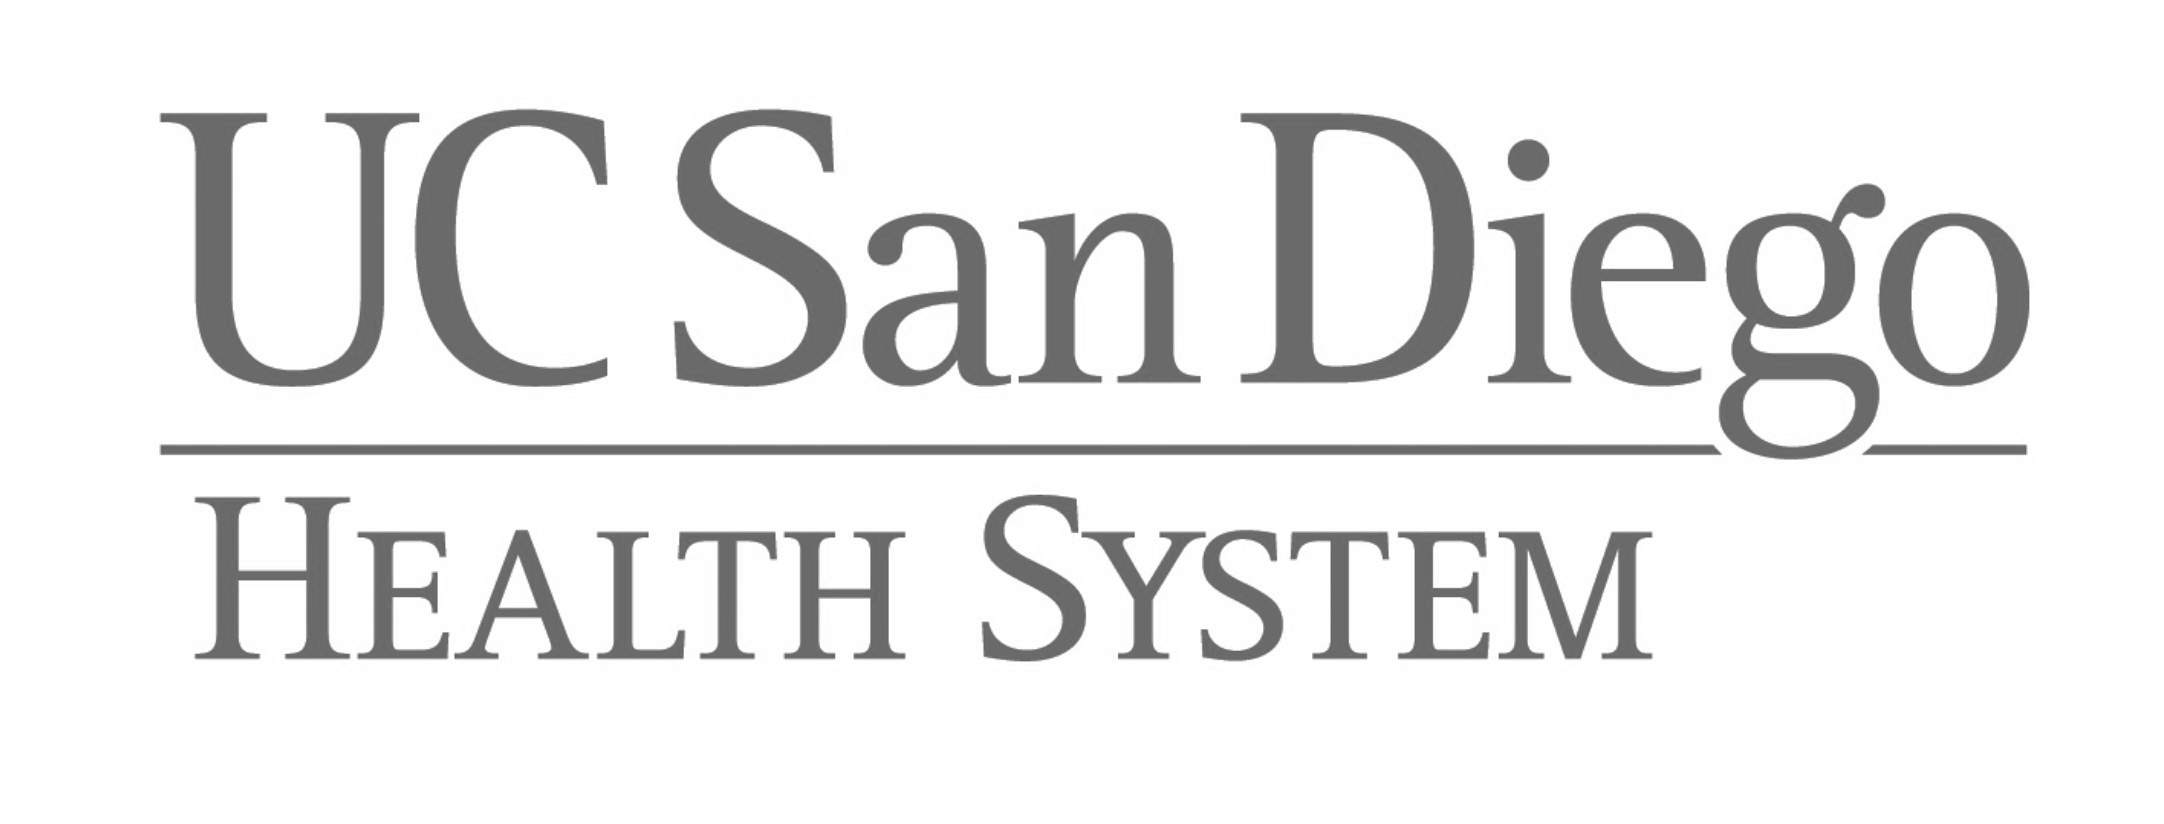 COM - UCSD Logo.png